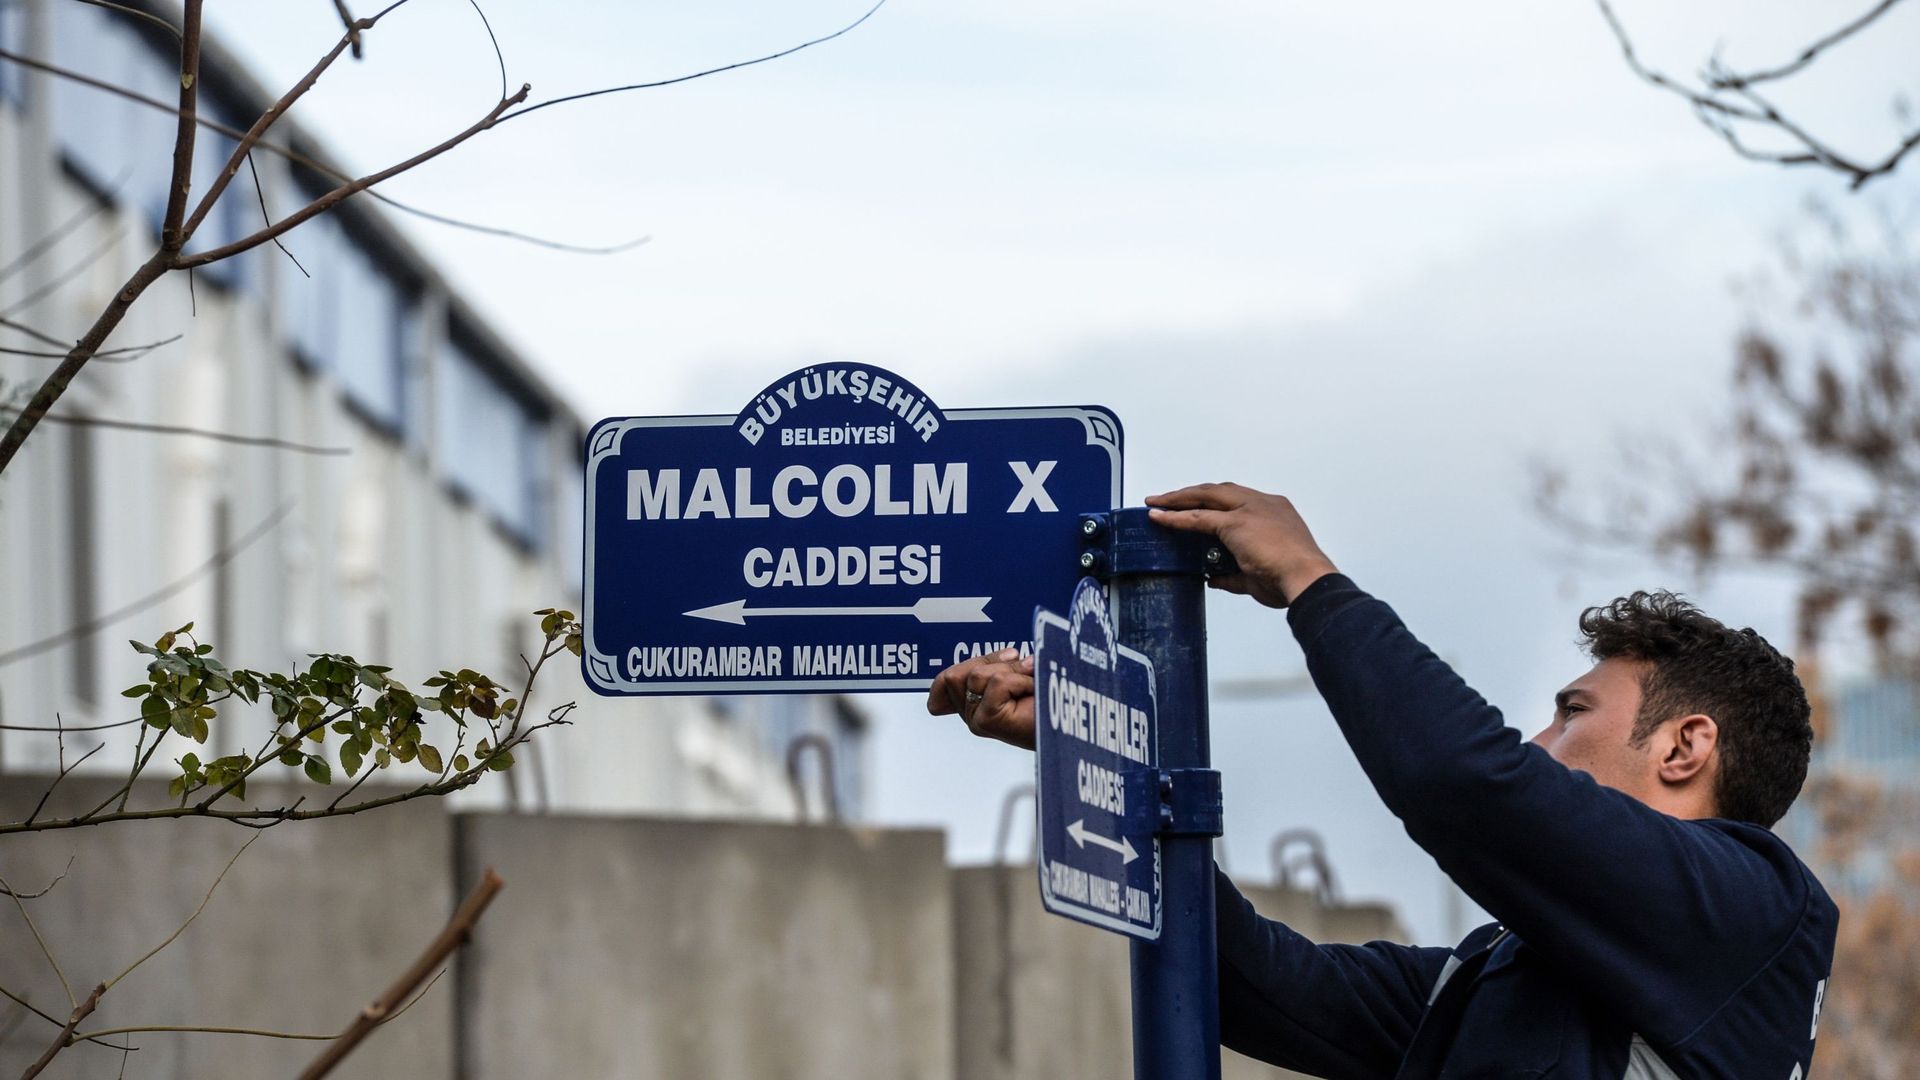 Ankara renomme la rue de la nouvelle ambassade américaine "rue Malcolm X"